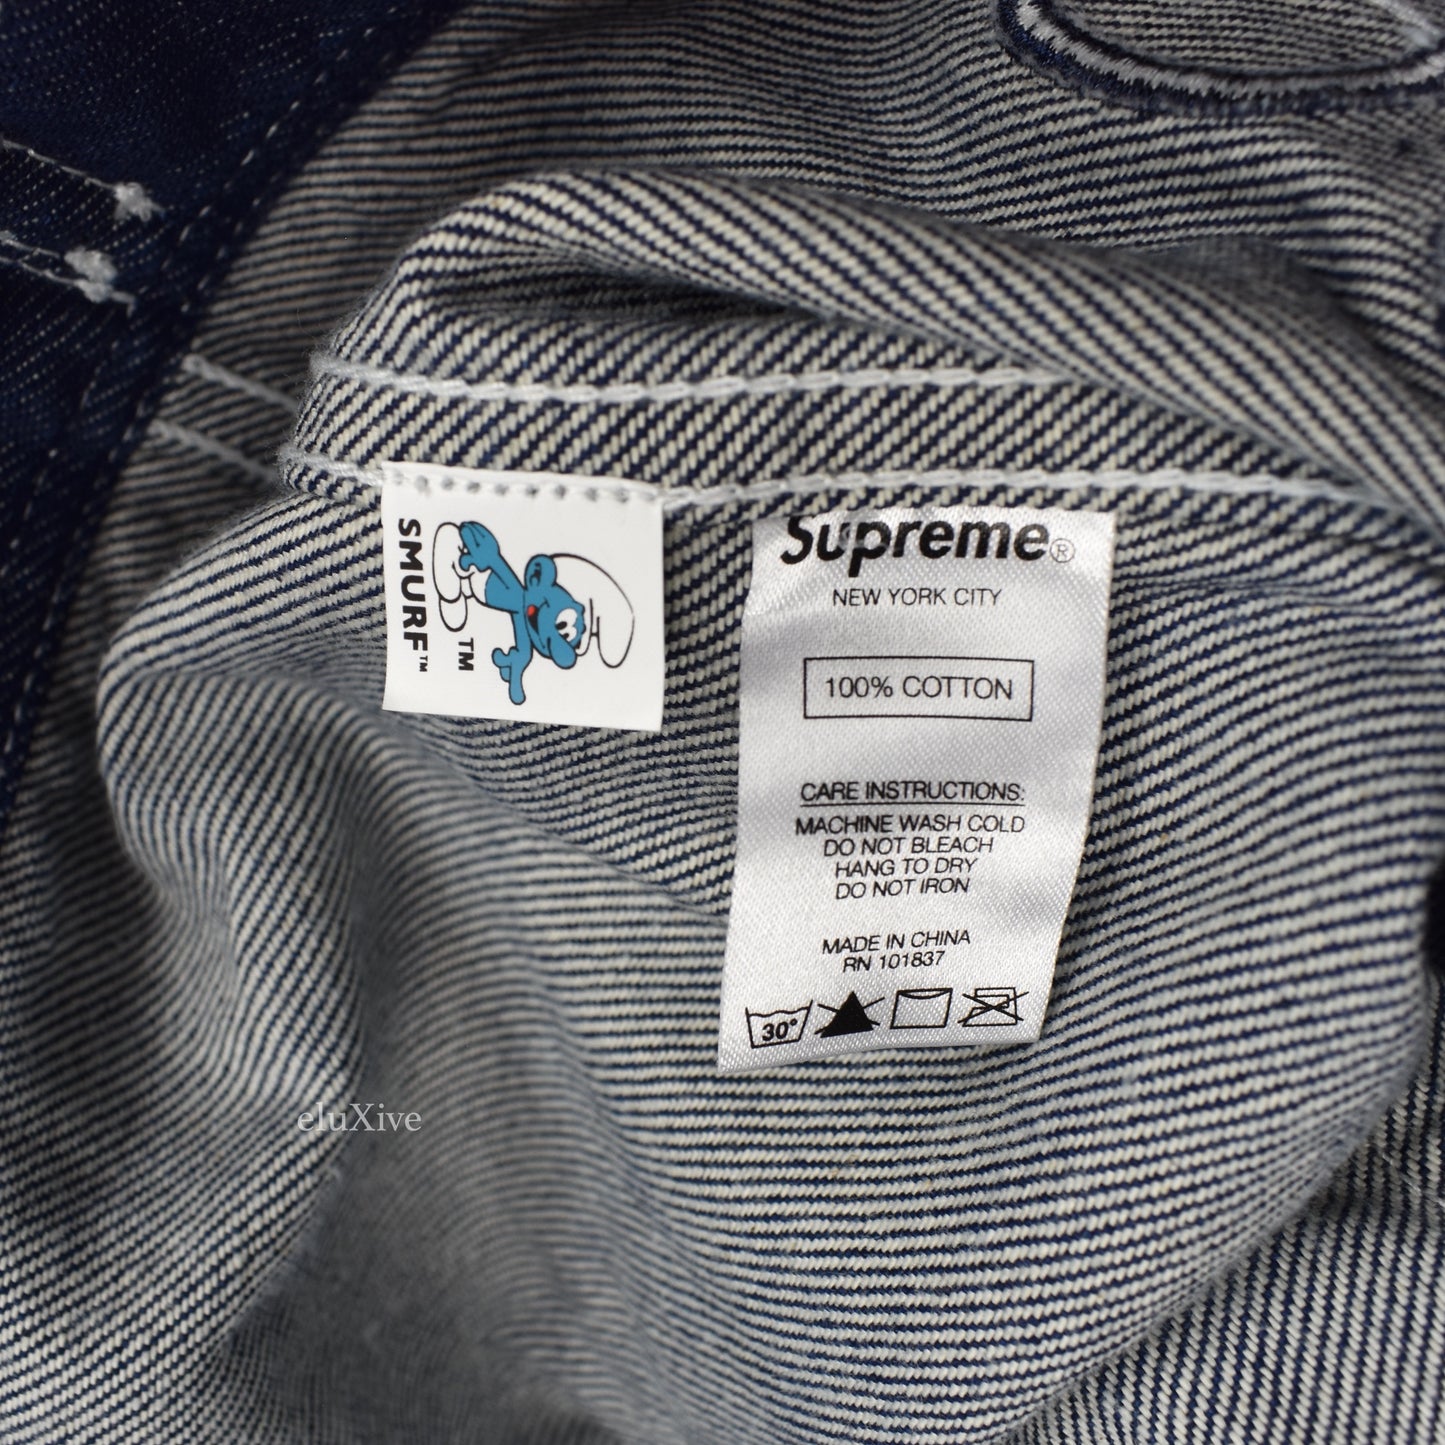 Supreme x Smurfs - Logo Denim Trucker Jacket (Blue)